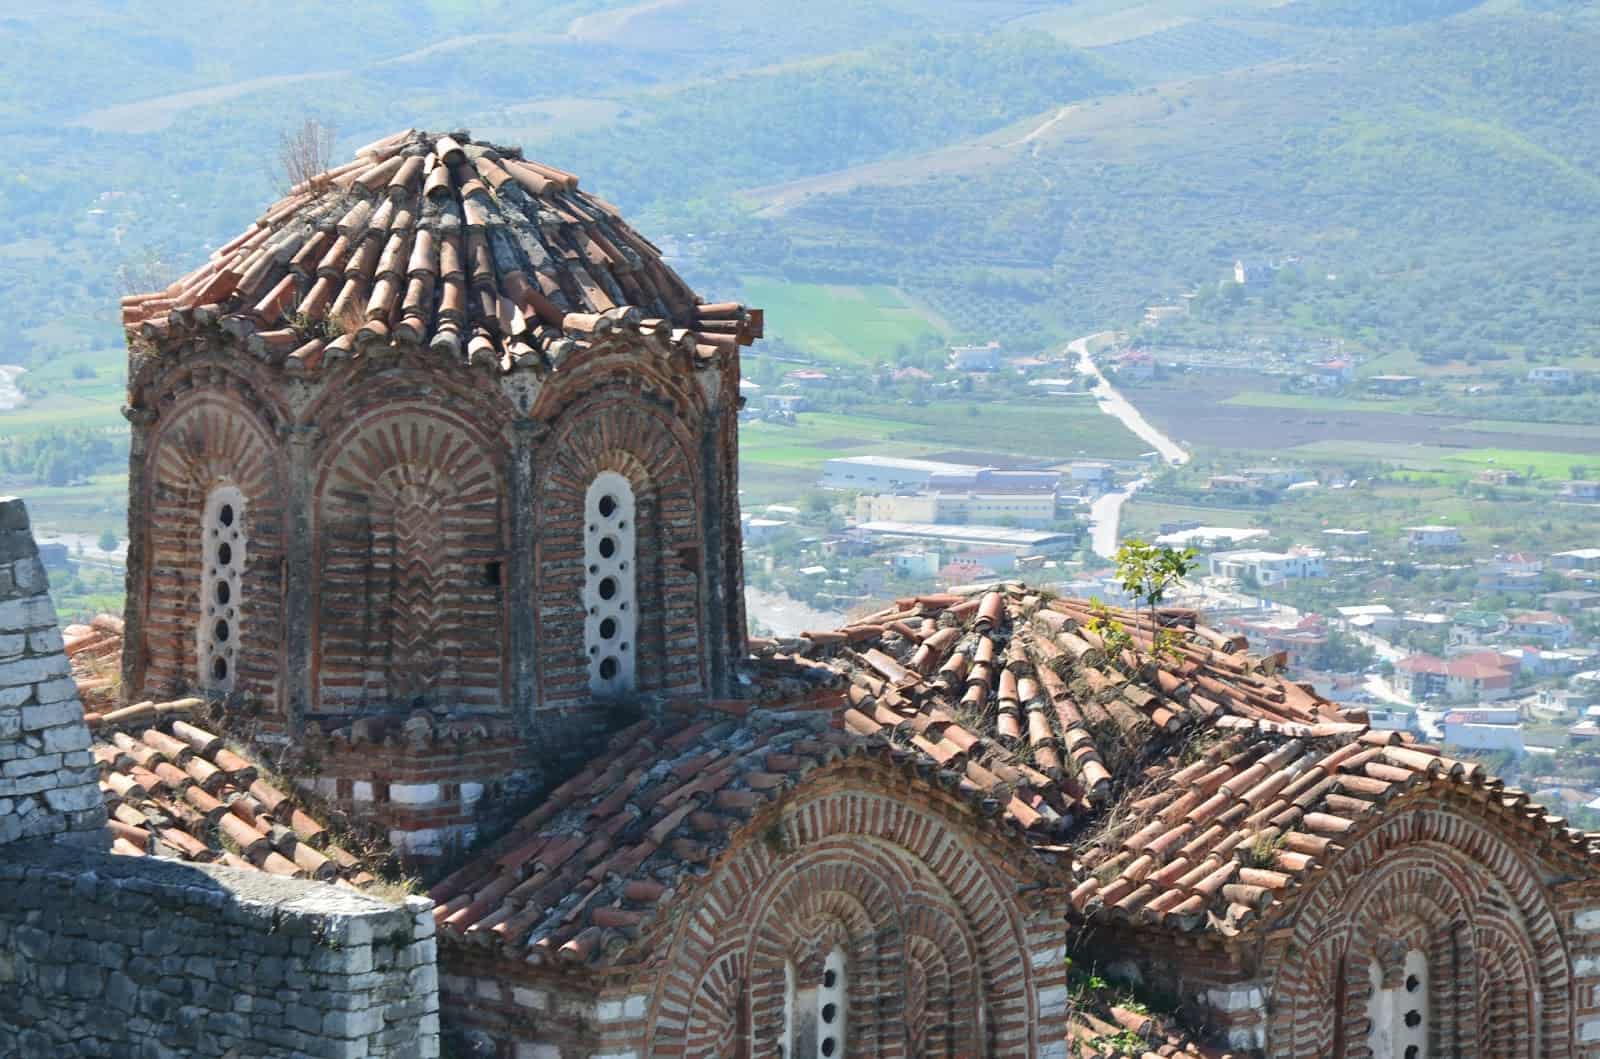 Holy Trinity Church in Berat, Albania